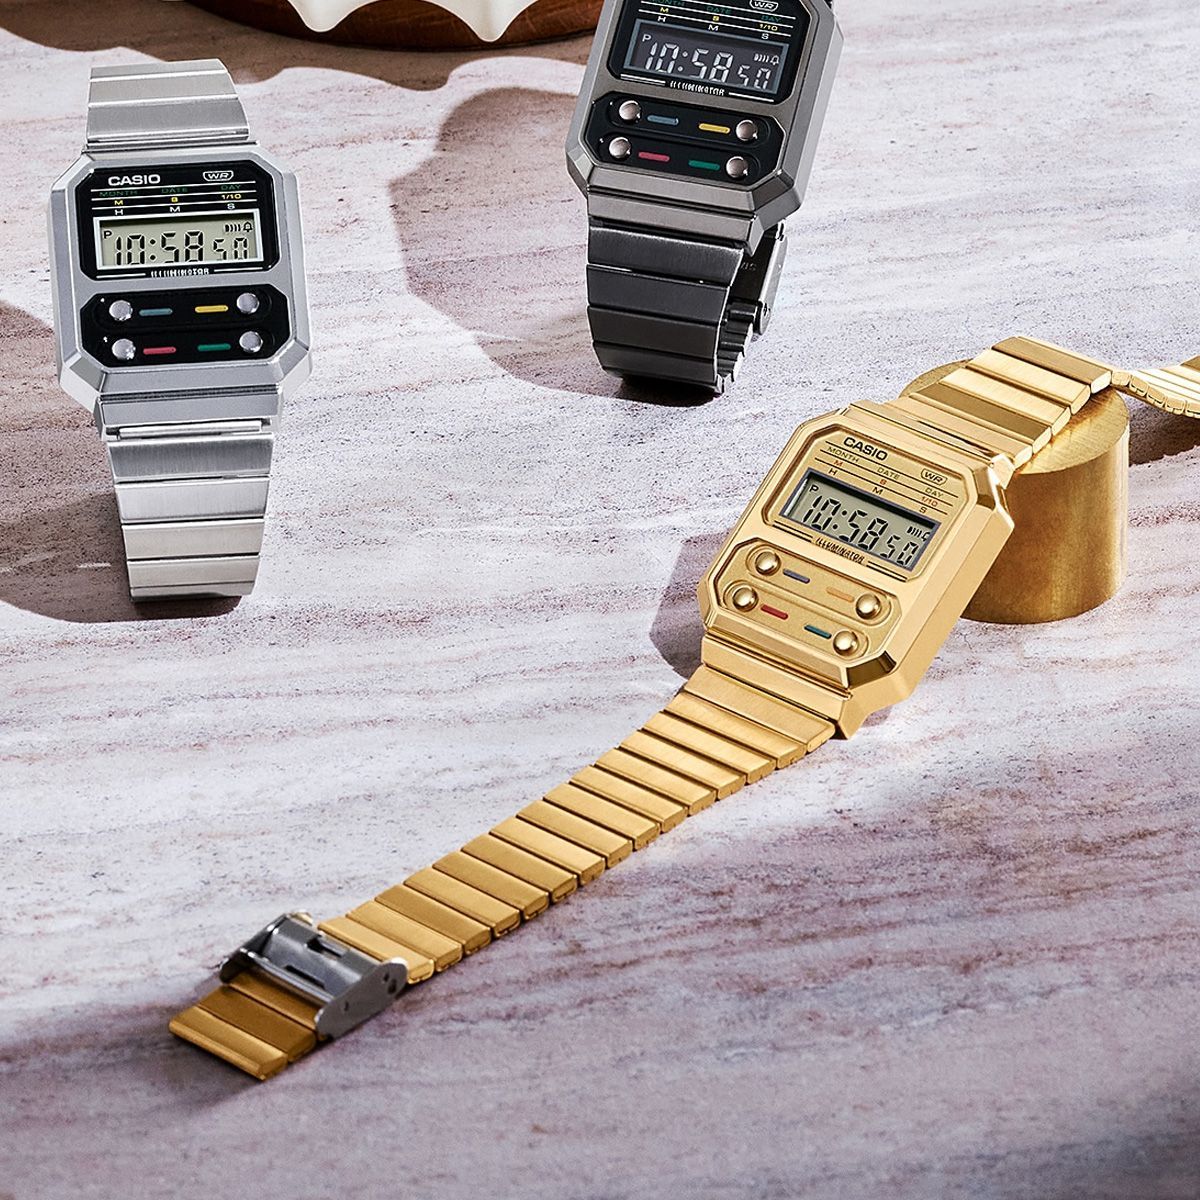 カシオ A100WEGG-1A2 復刻版 腕時計 ガンメタル ブラック ゴールド-4